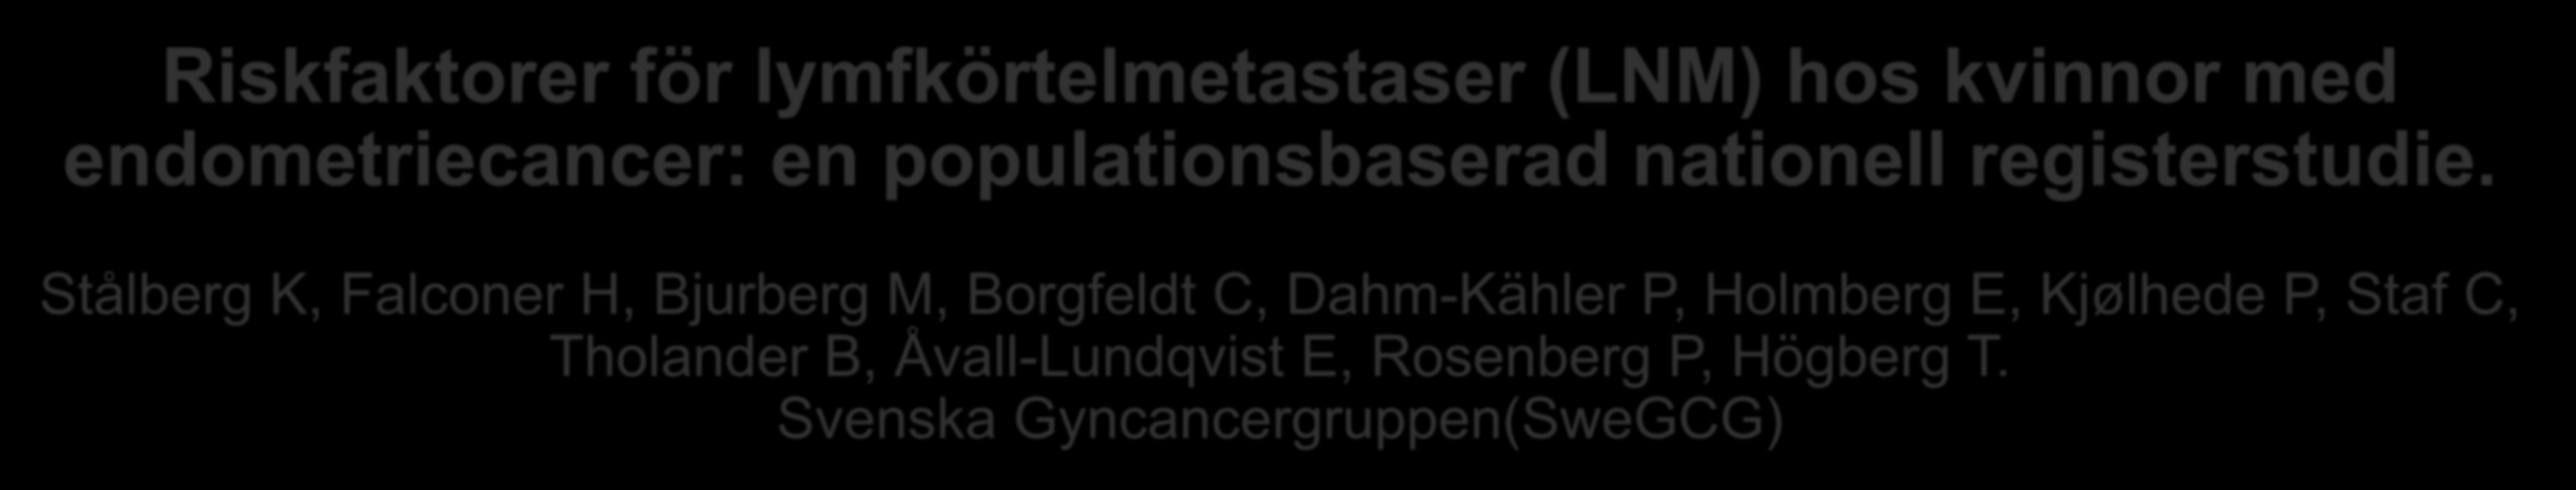 Stålberg K, Falconer H, Bjurberg M, Borgfeldt C, Dahm-Kähler P,